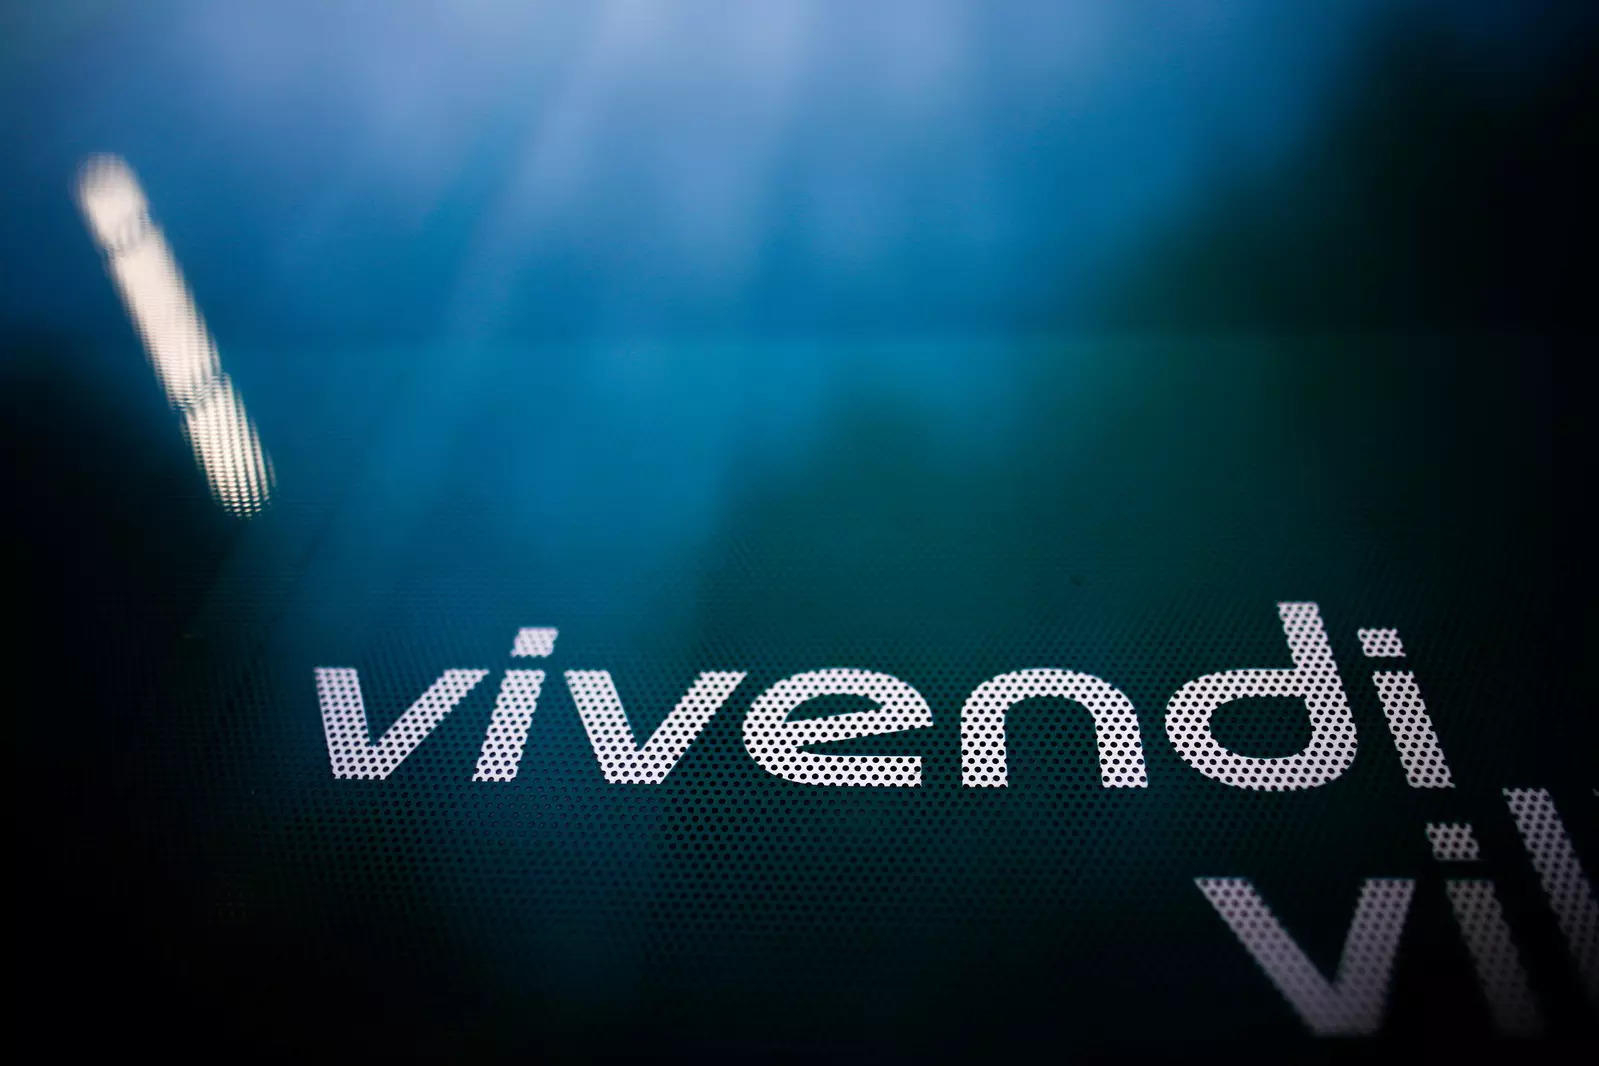 Un tribunale italiano ha ribaltato i voti degli azionisti di Mediaset, fatta eccezione per Vivendi